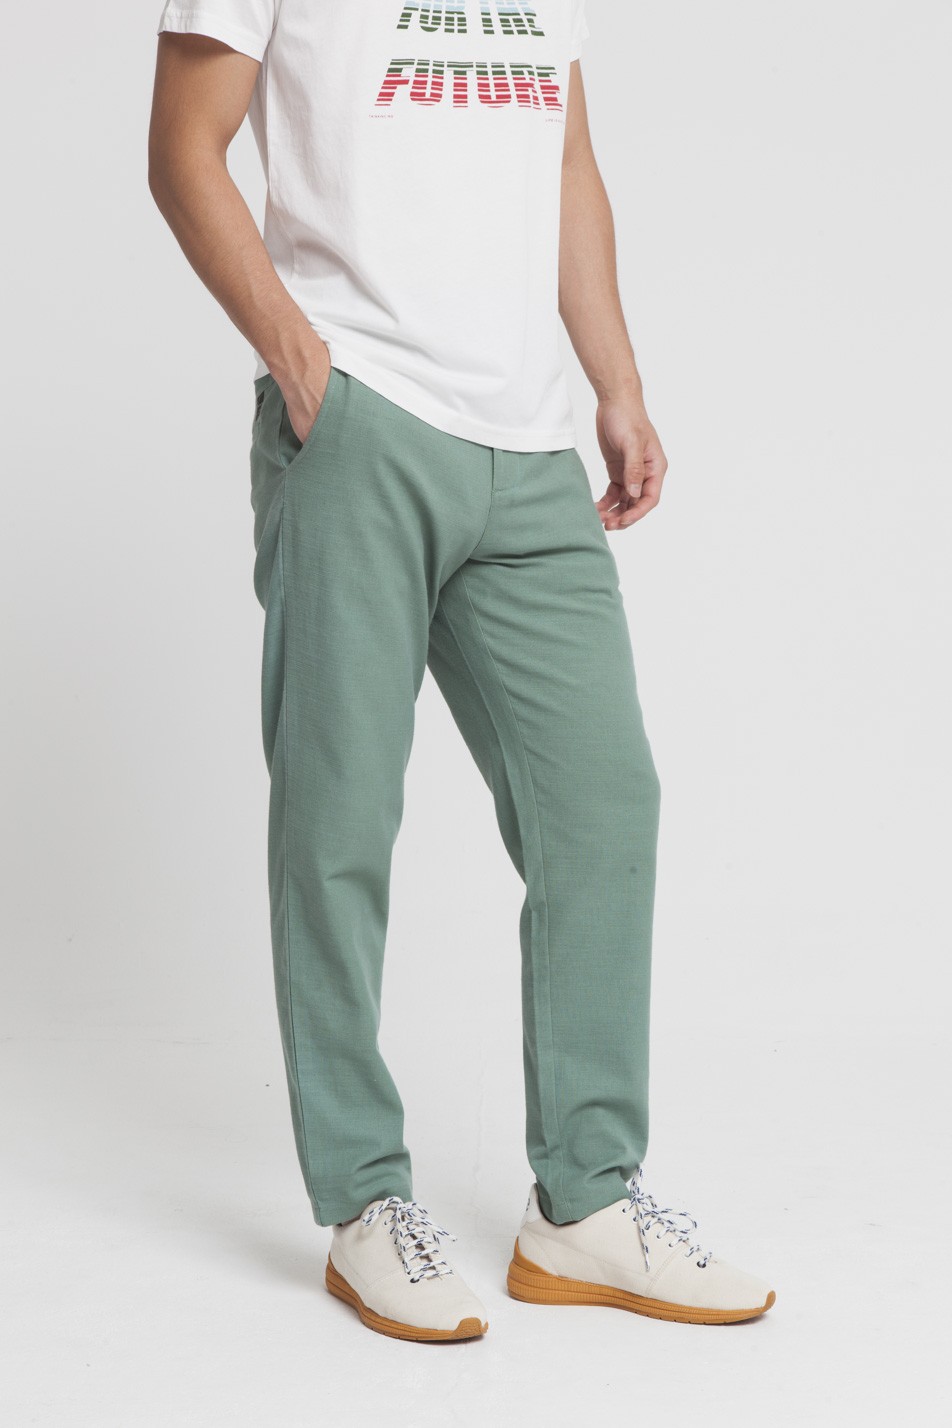 pantalon algodon organico